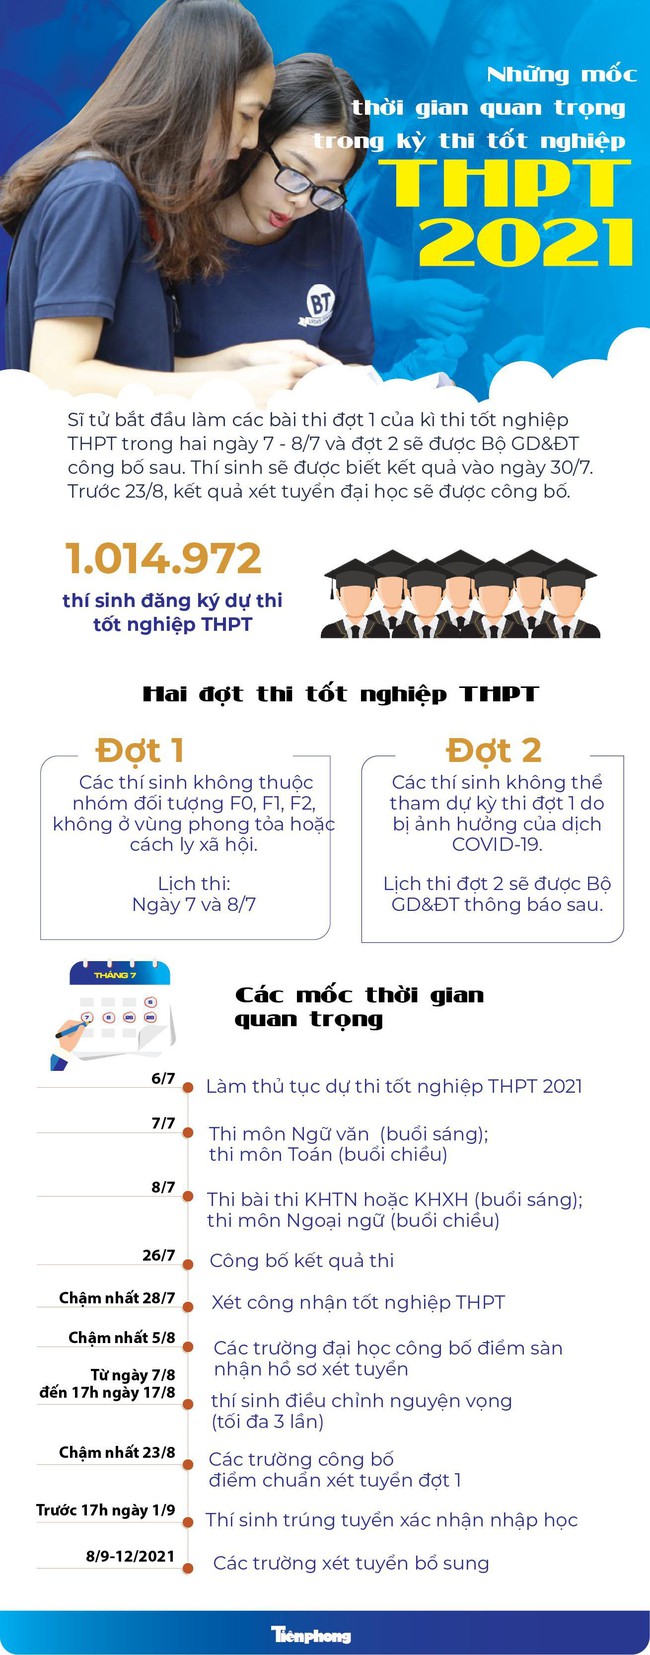 Mốc thời gian quan trọng cho kỳ thi tốt nghiệp THPT 2021 - Ảnh 1.